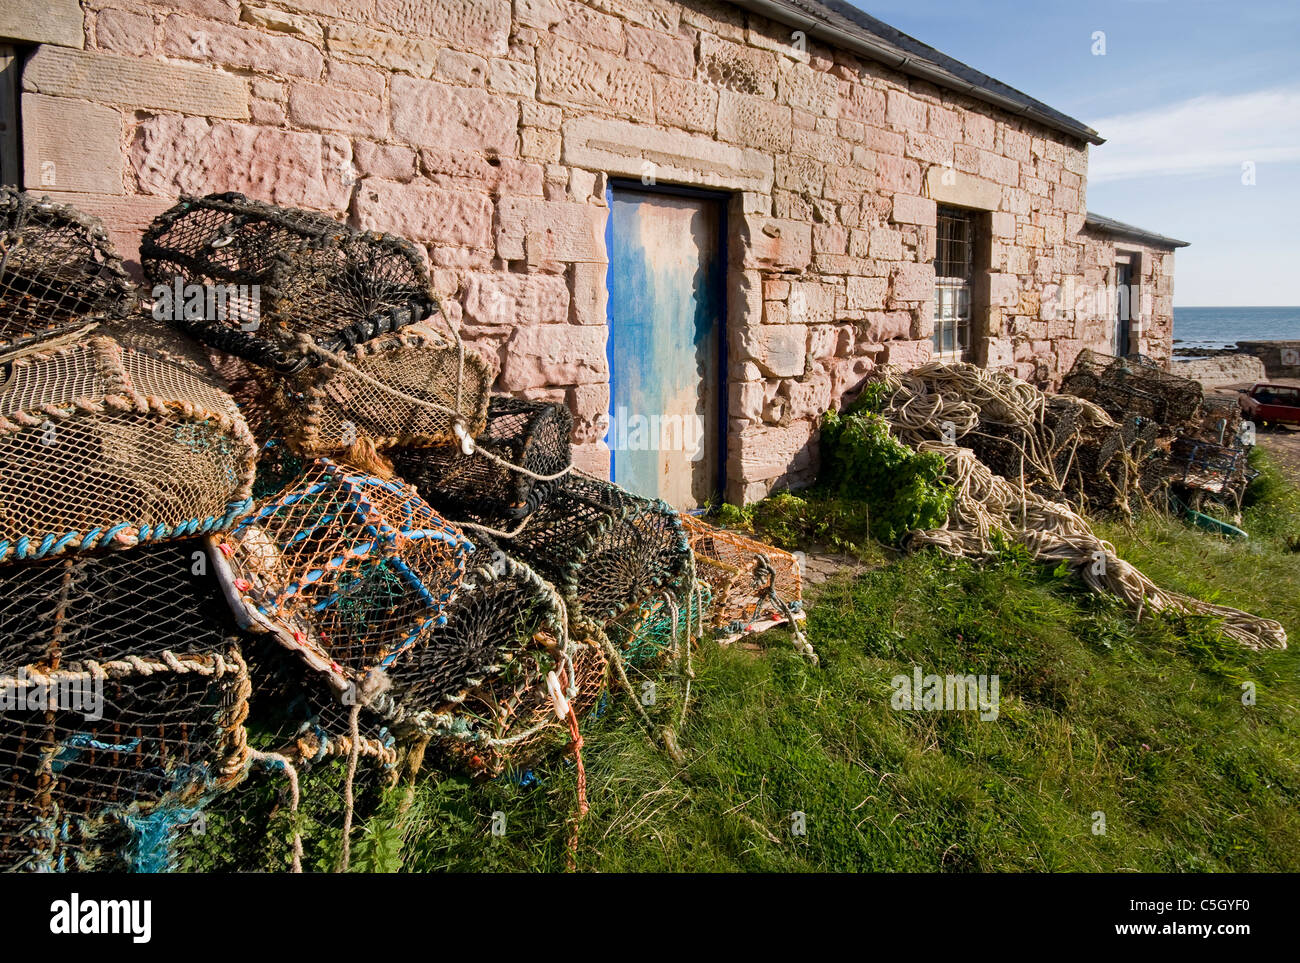 Los restos de pesca y creels abandonados por Fisherman's Cottage Cove por St Abbs Foto de stock